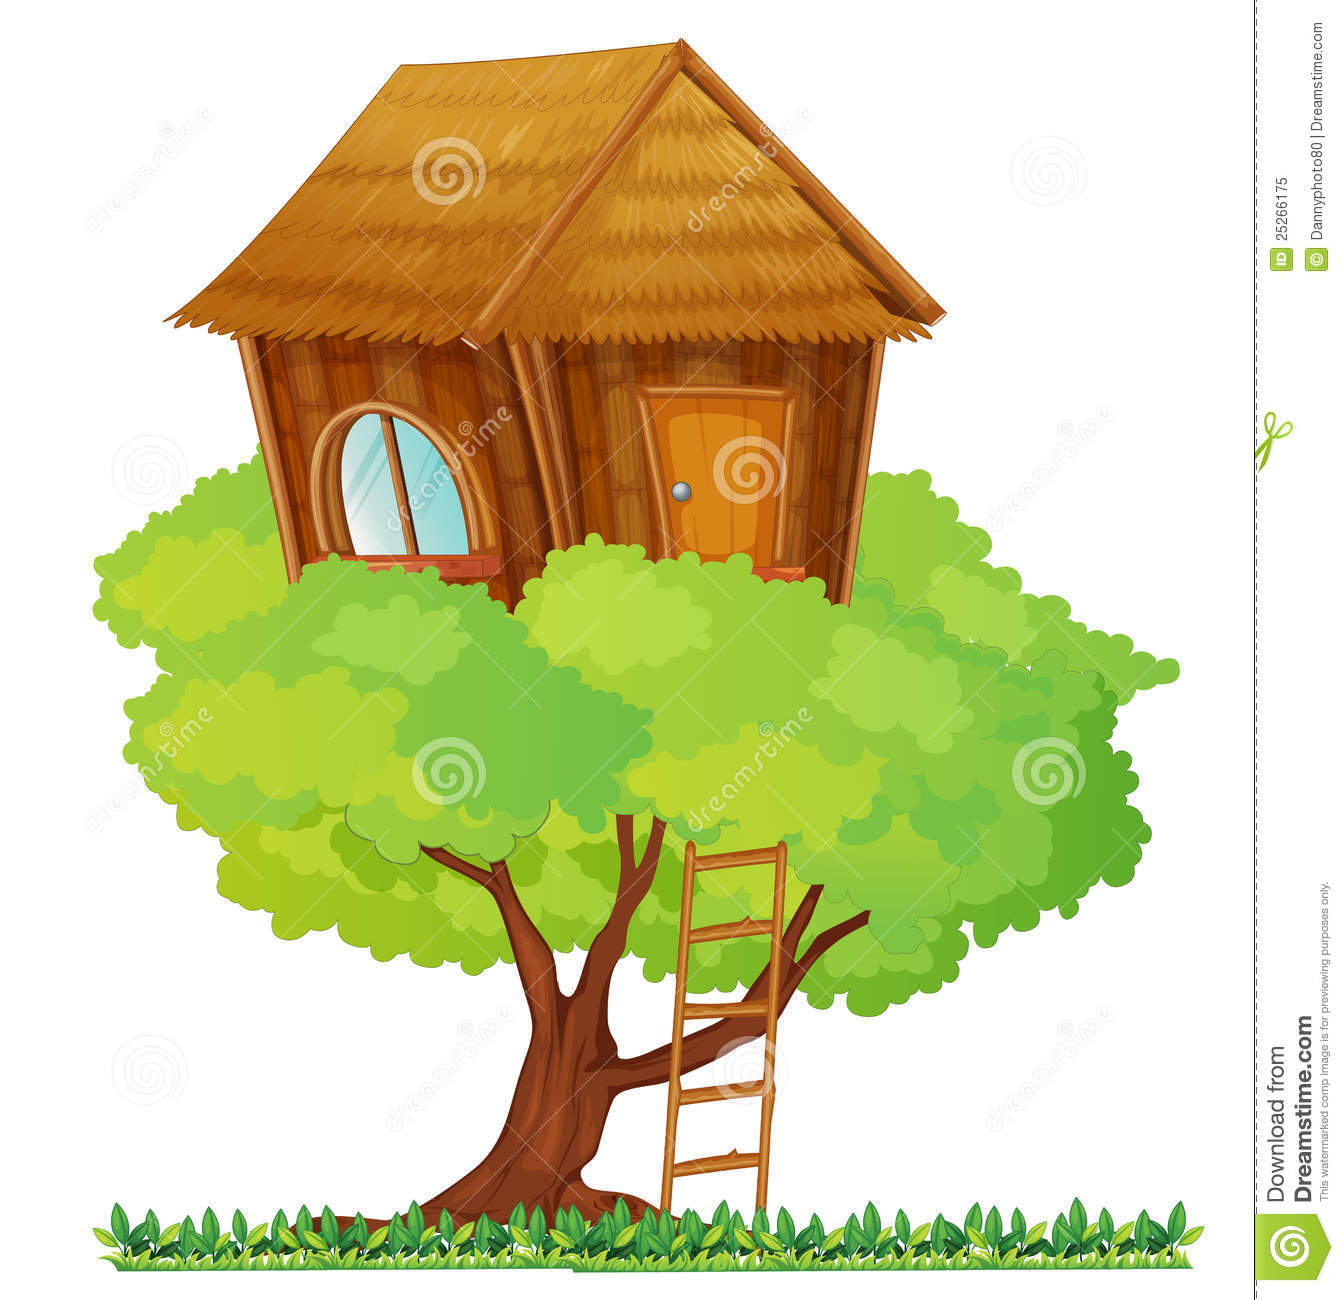 Tree house Royalty Free Stock Photo